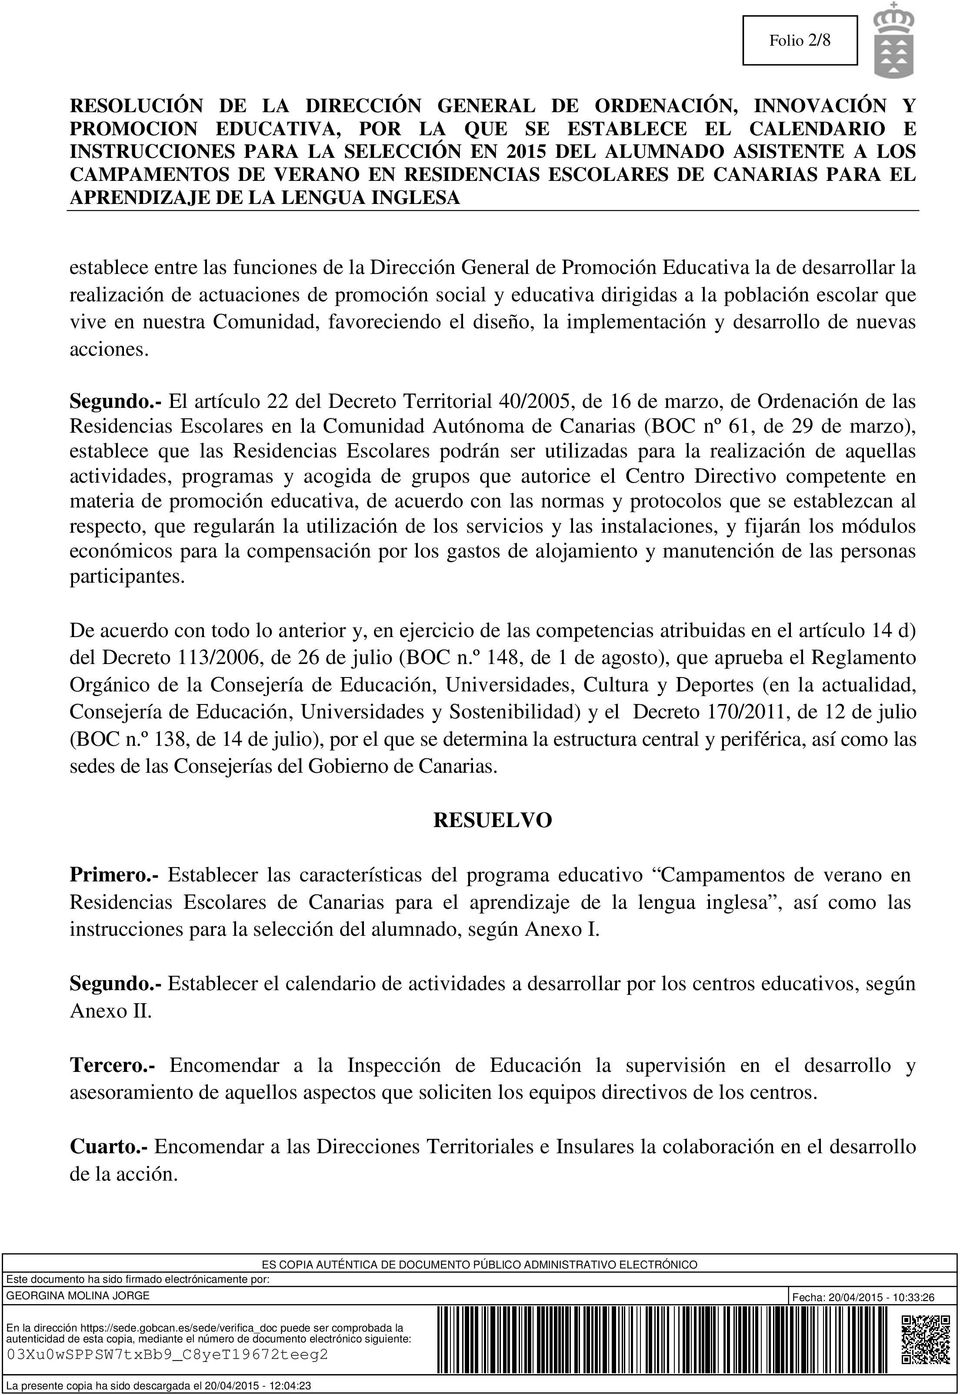 - El artículo 22 del Decreto Territorial 40/2005, de 16 de marzo, de Ordenación de las Residencias Escolares en la Comunidad Autónoma de Canarias (BOC nº 61, de 29 de marzo), establece que las